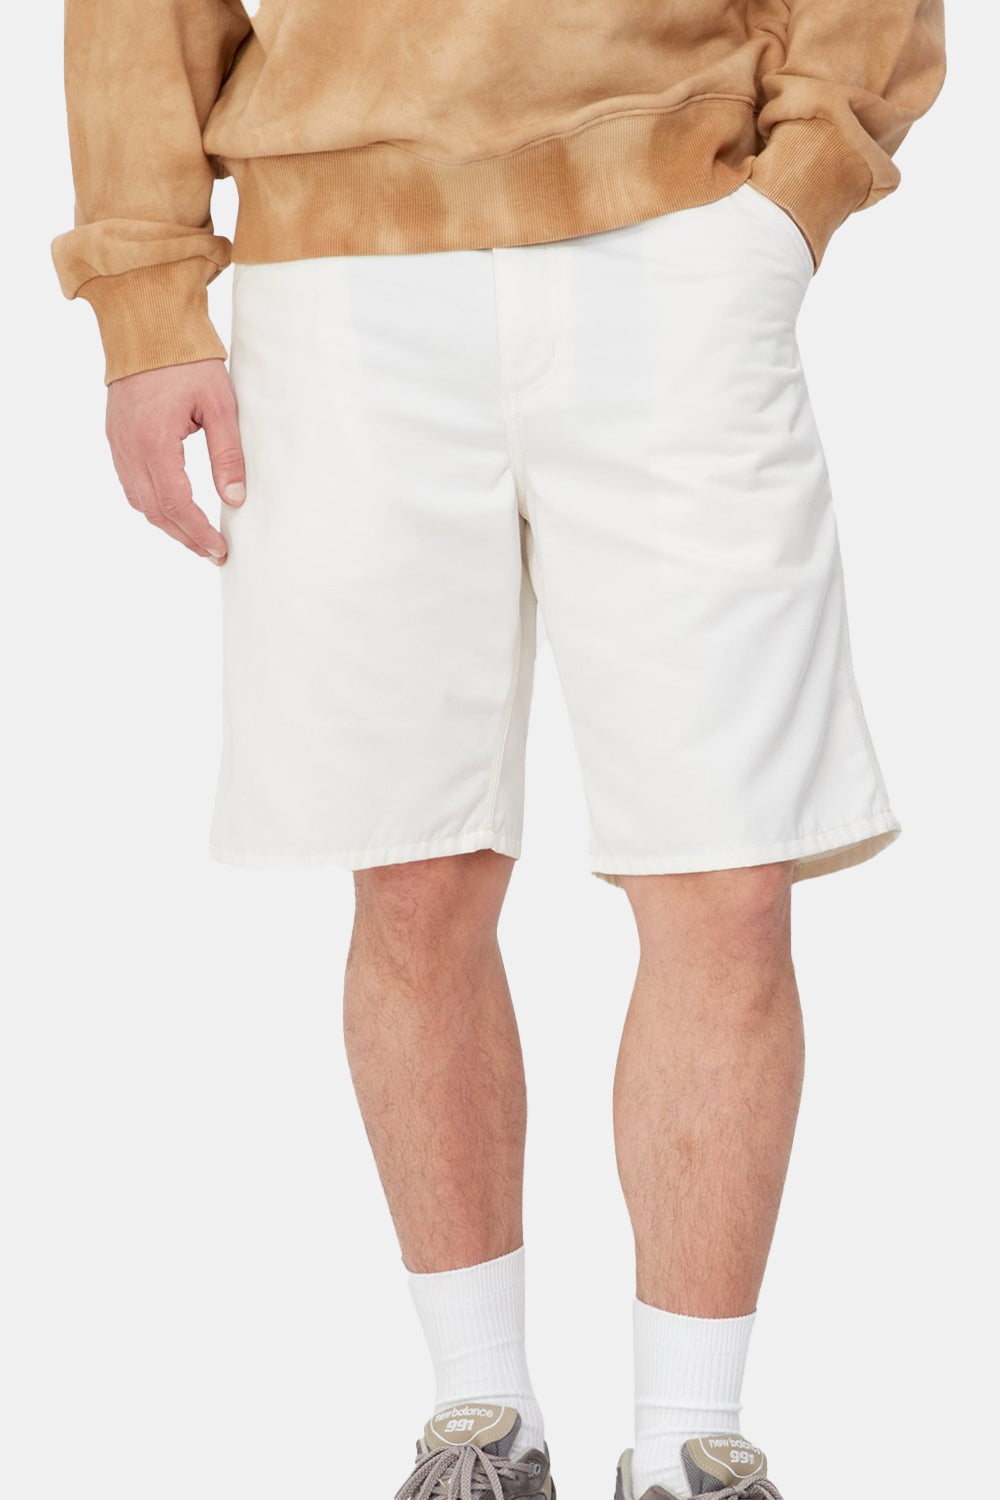 Carhartt WIP Simple Shorts (Wax White)